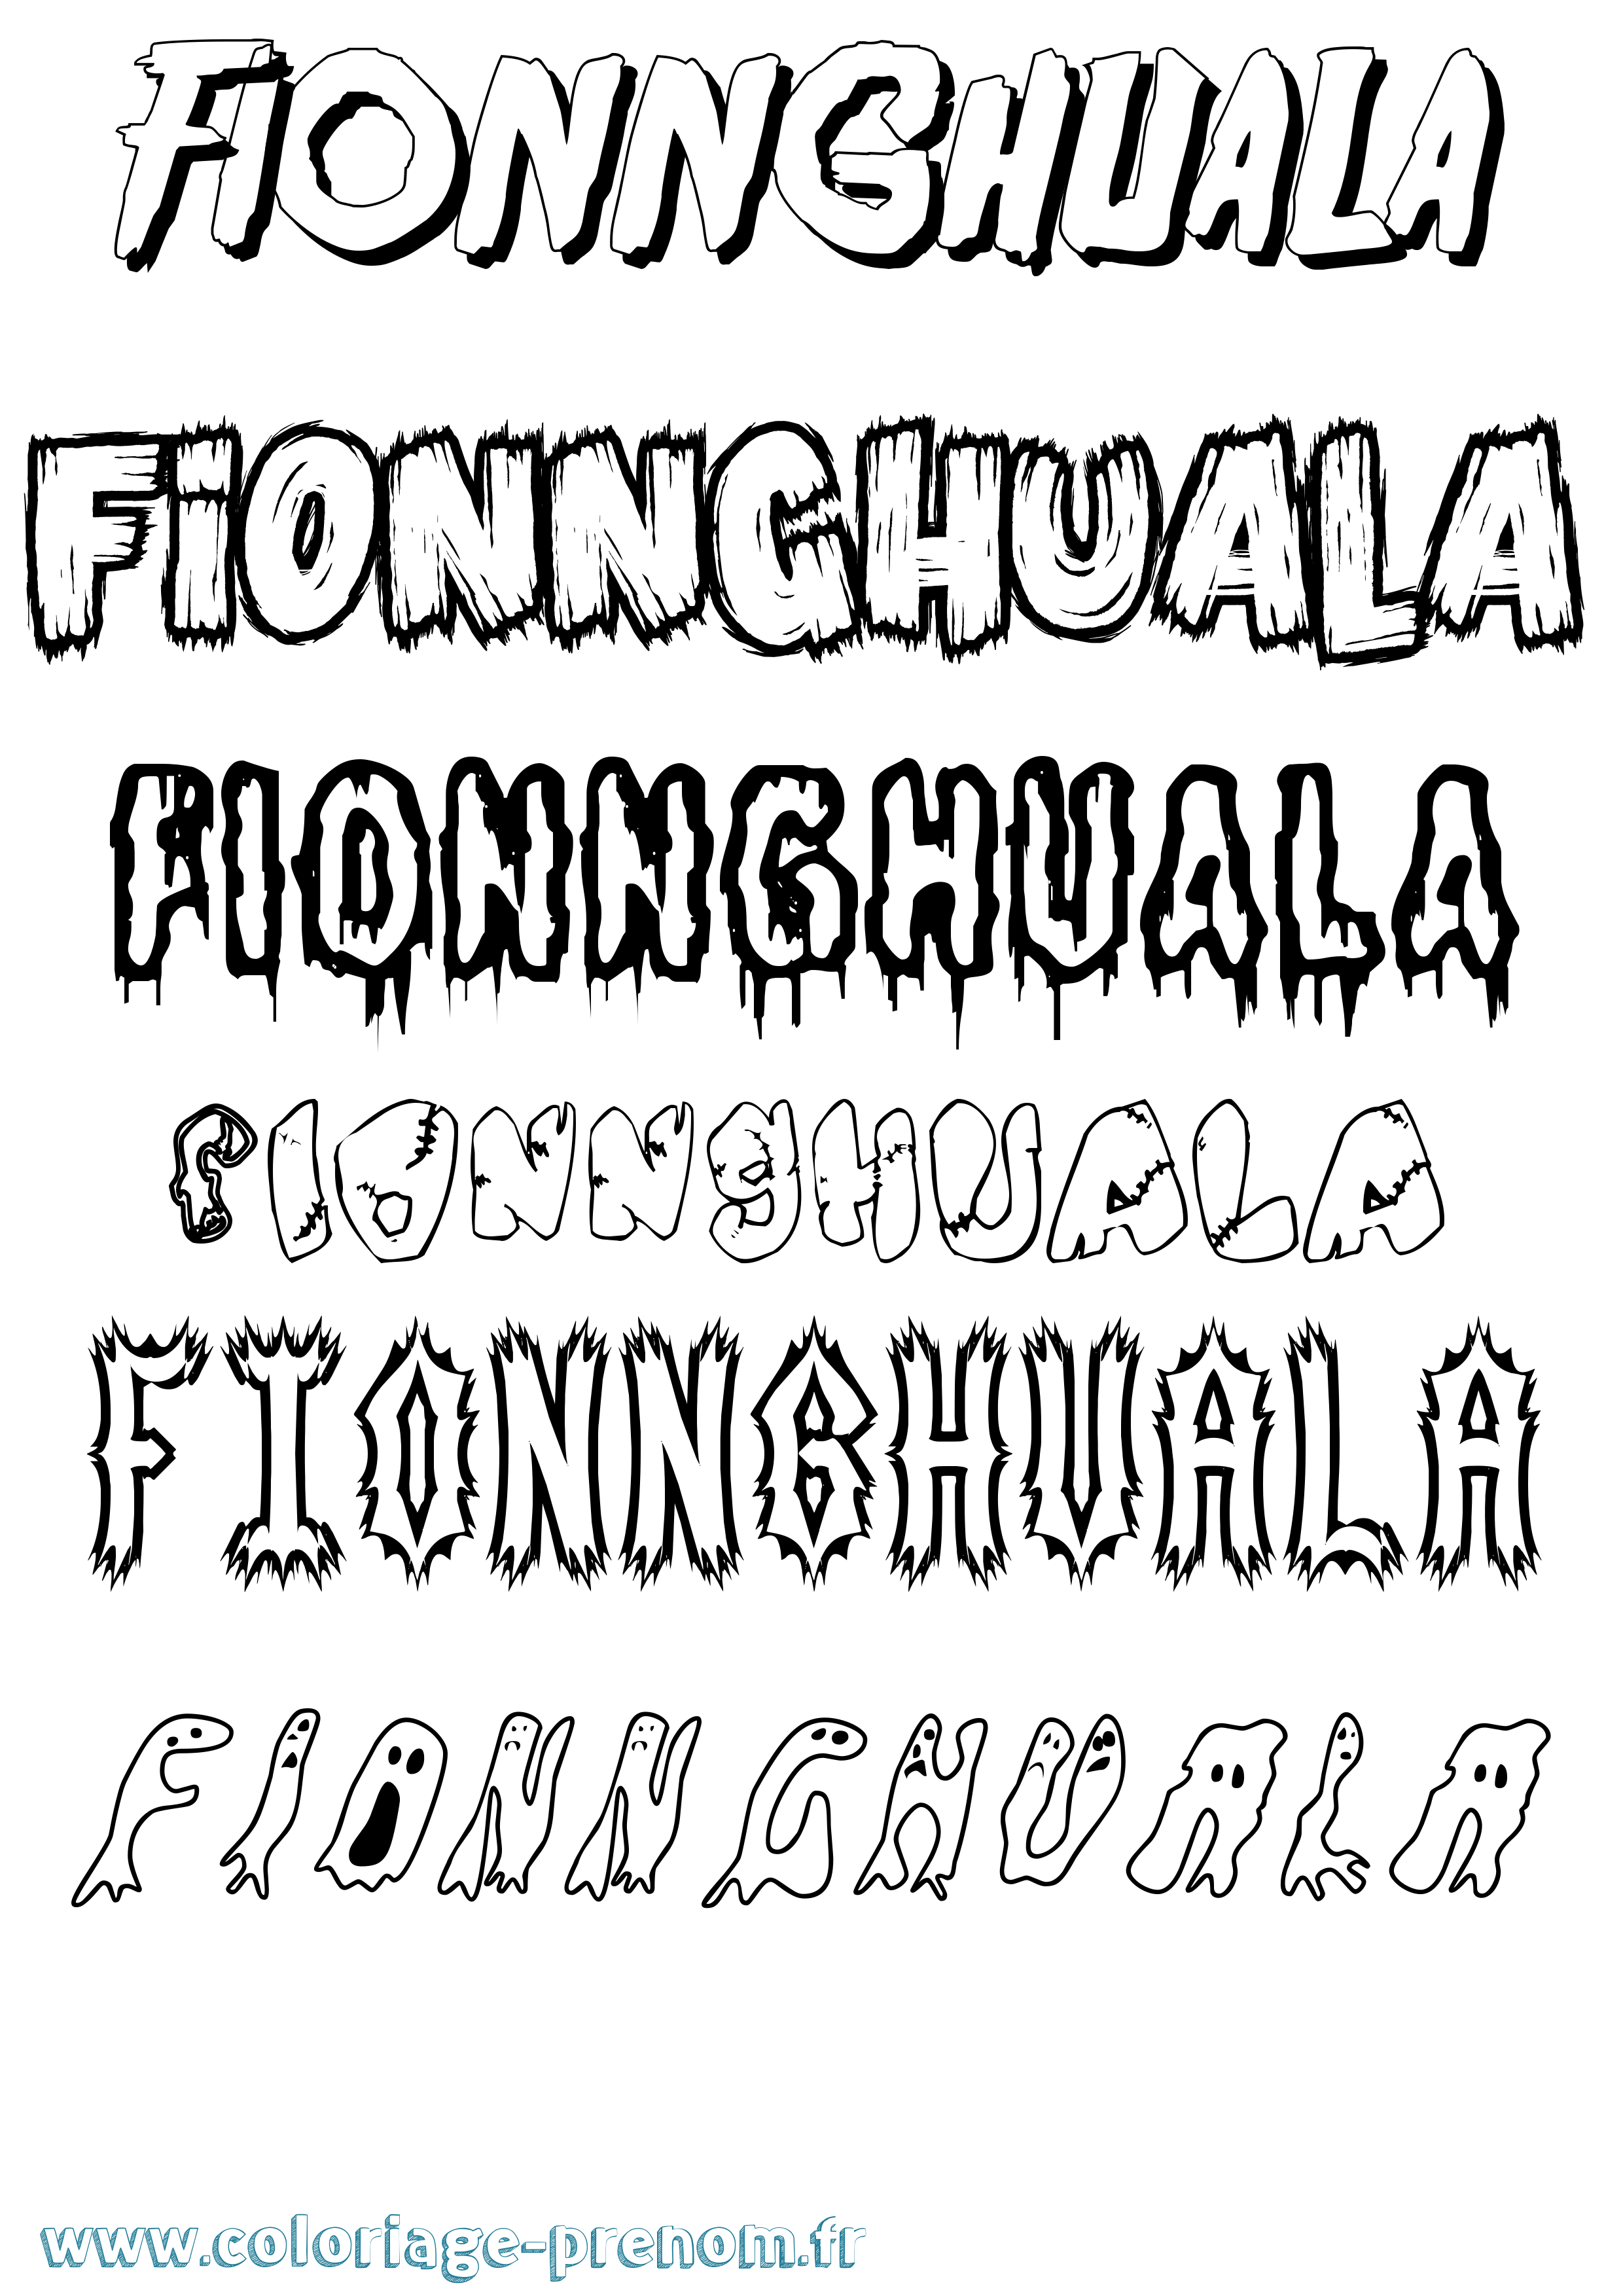 Coloriage prénom Fionnghuala Frisson